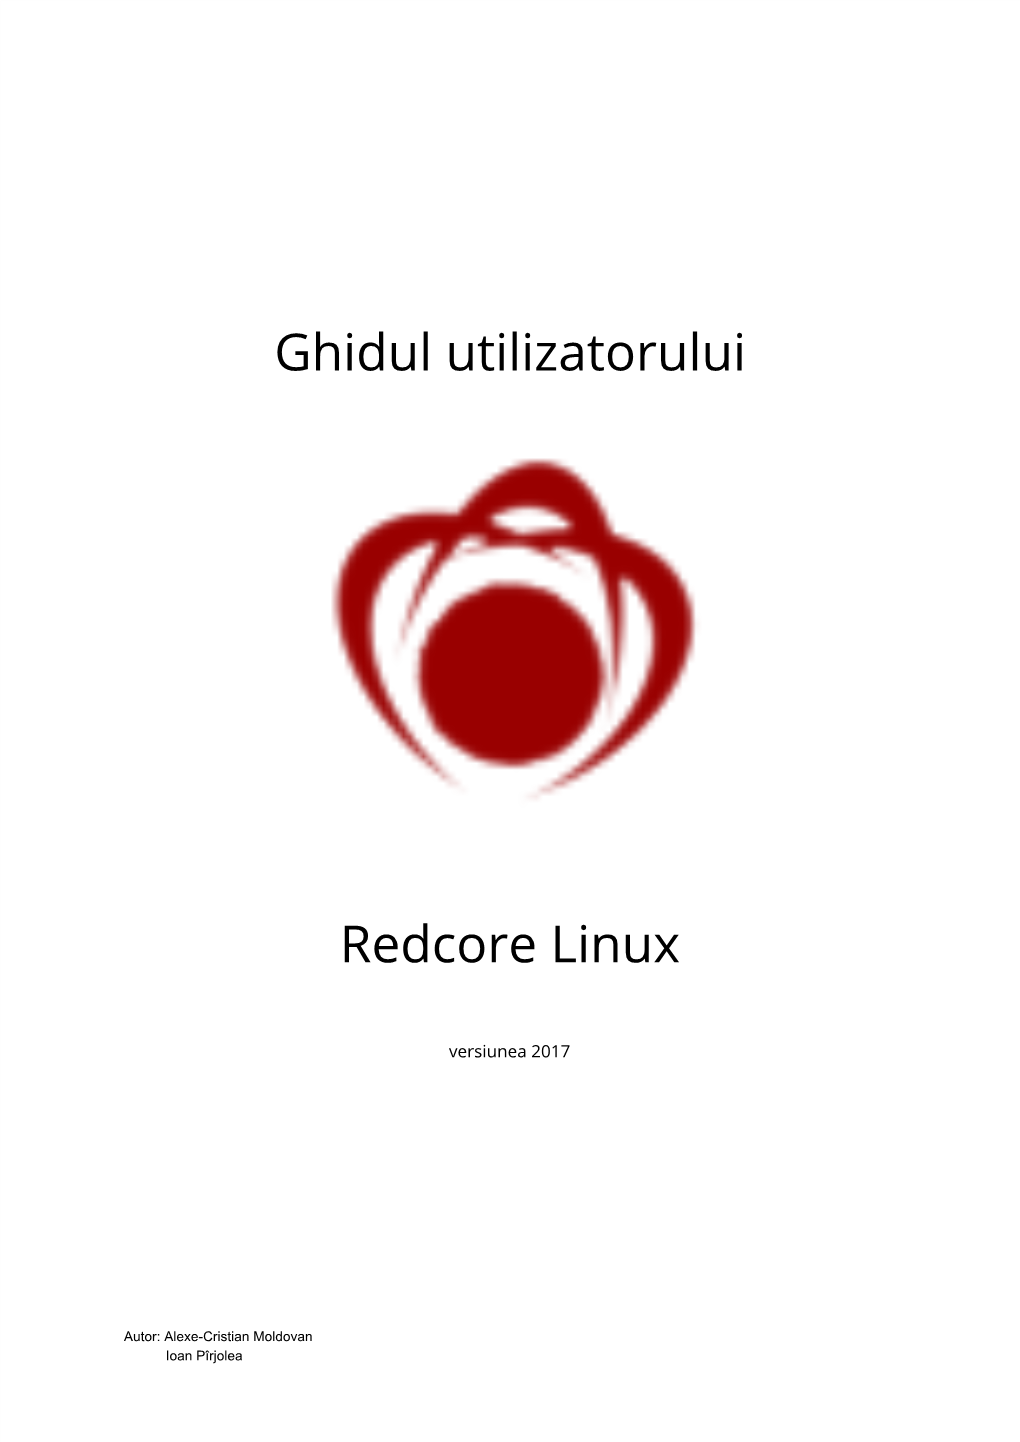 Ghidul Utilizatorului Redcore Linux